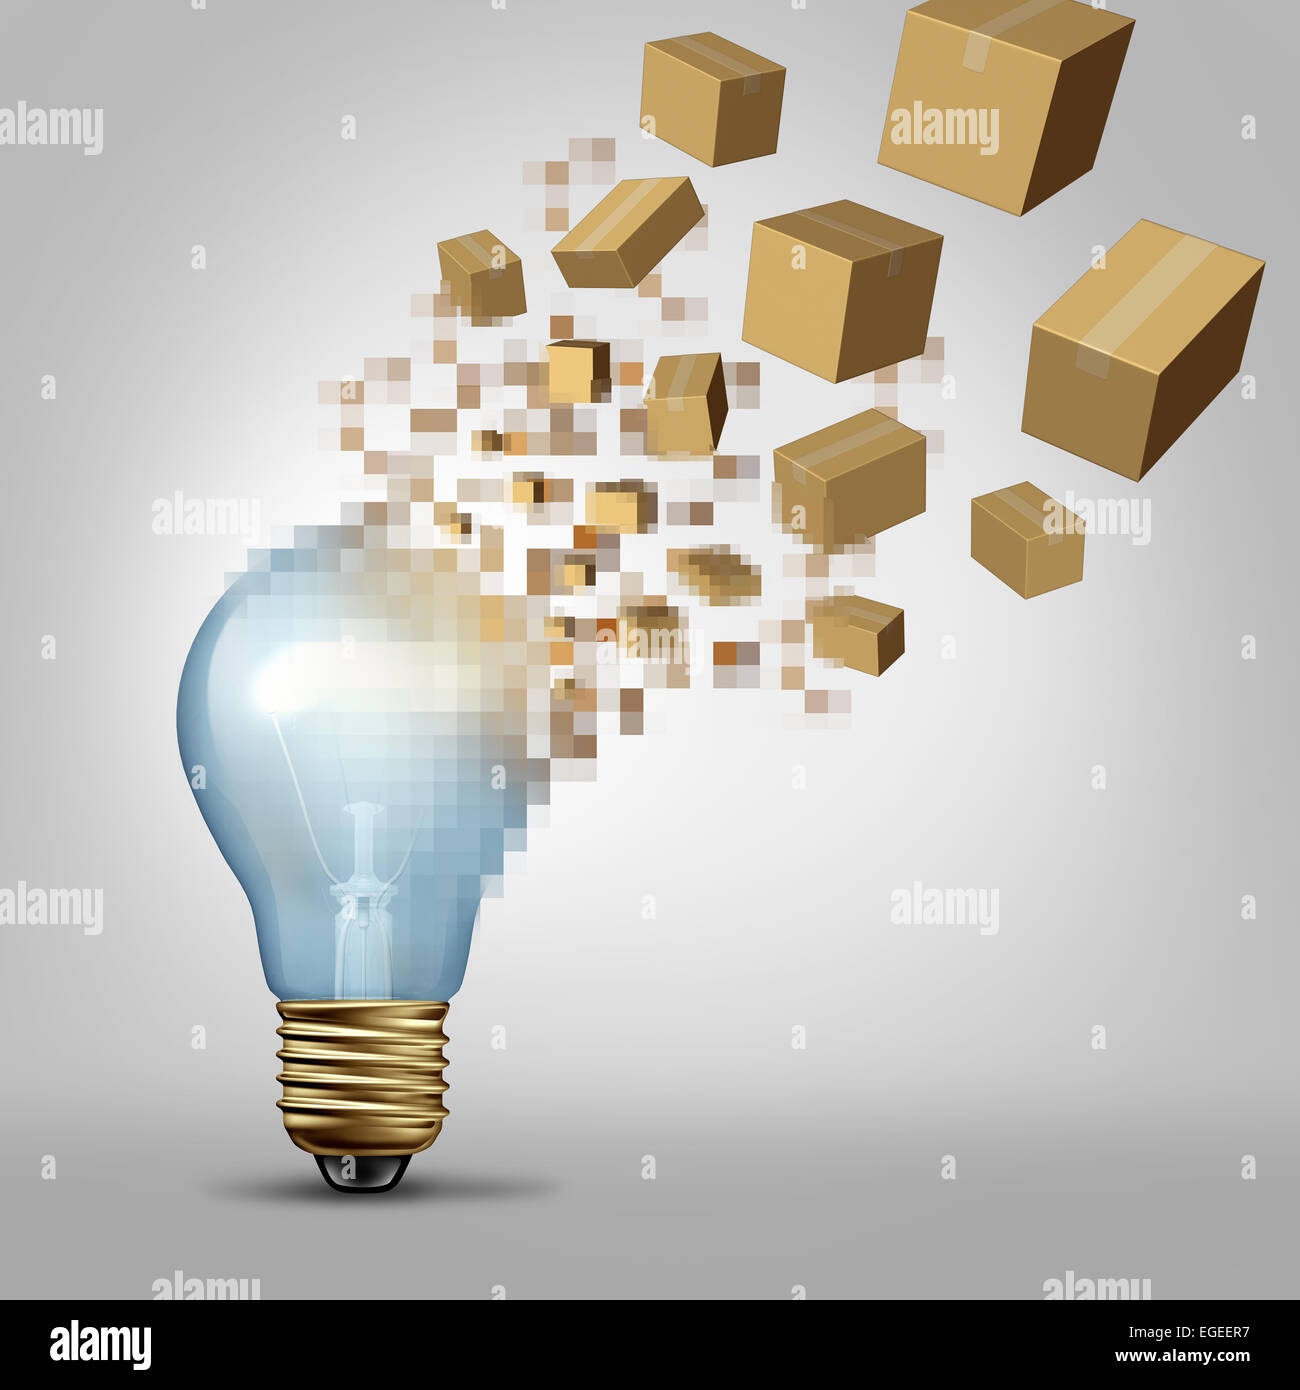 Idee zur Wirklichkeit als eine Glühbirne wird Digital pixelig und die verschlüsselte Fragmente Umwandlung in verpackten Kartons des Produkts wie ein Business-Symbol für erfolgreiche Vision und Ziele zu visualisieren. Stockfoto